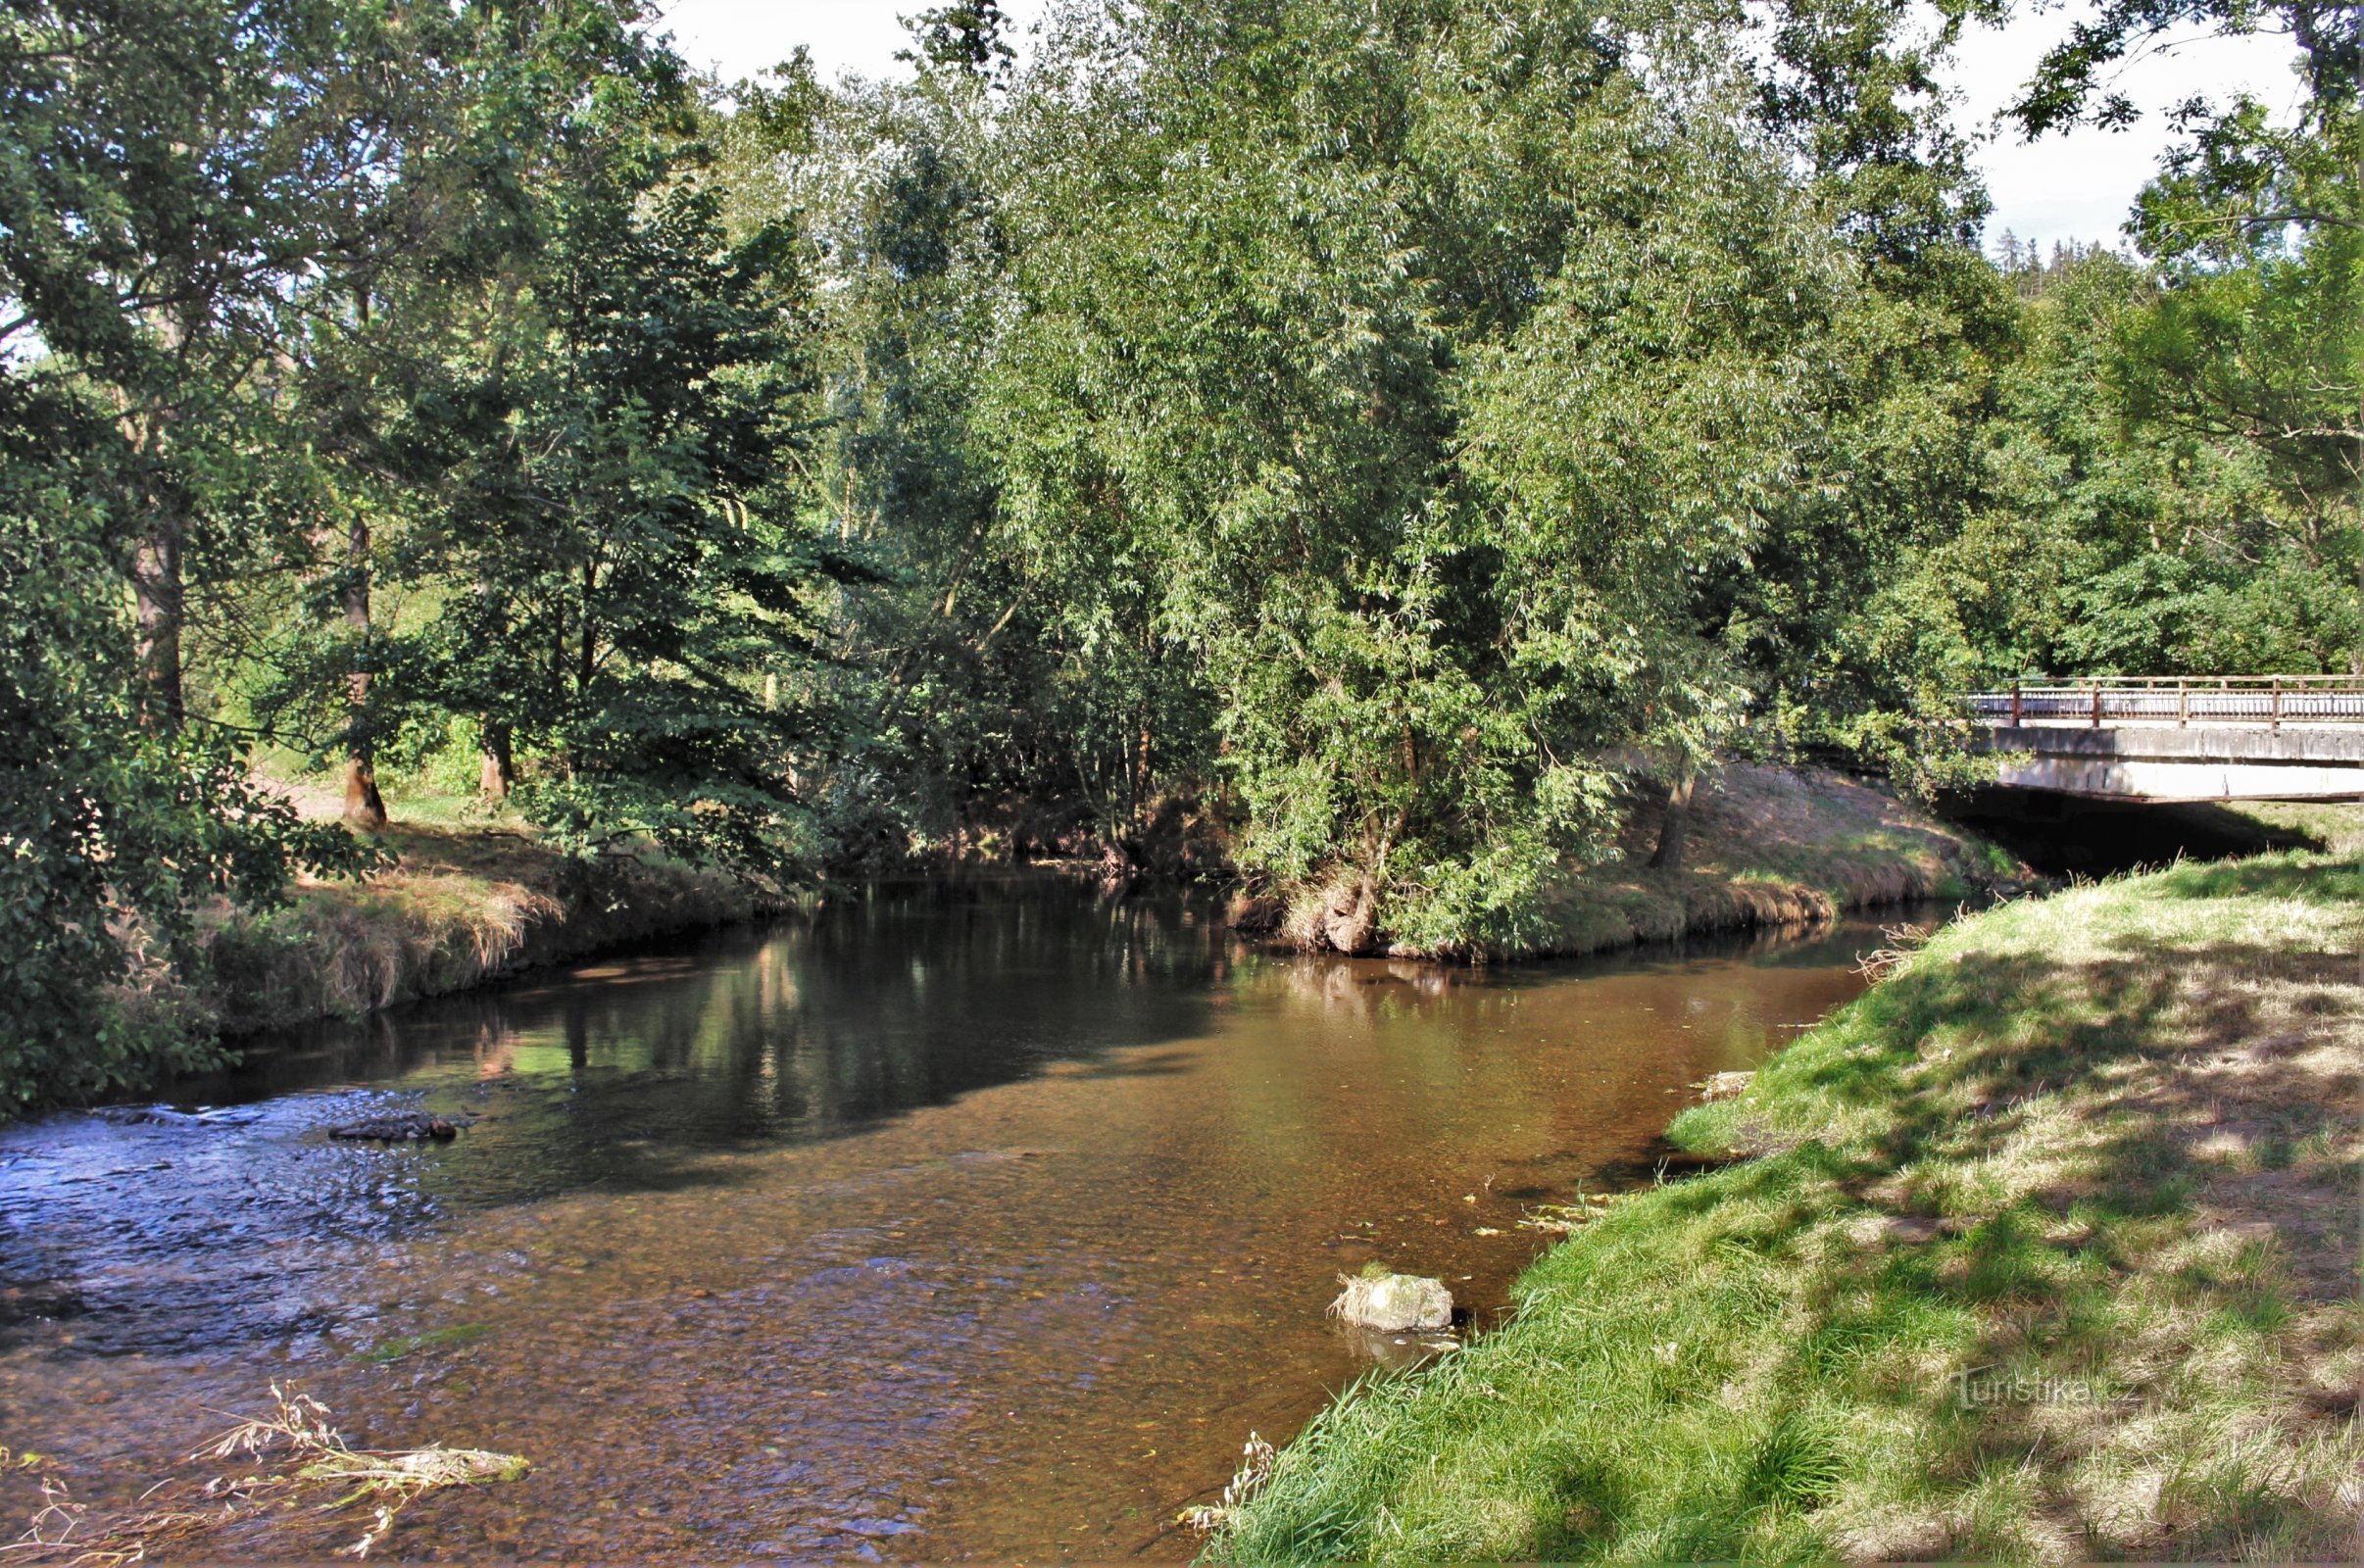 O rio Svitava flui da esquerda, o rio Bělá da ponte da direita